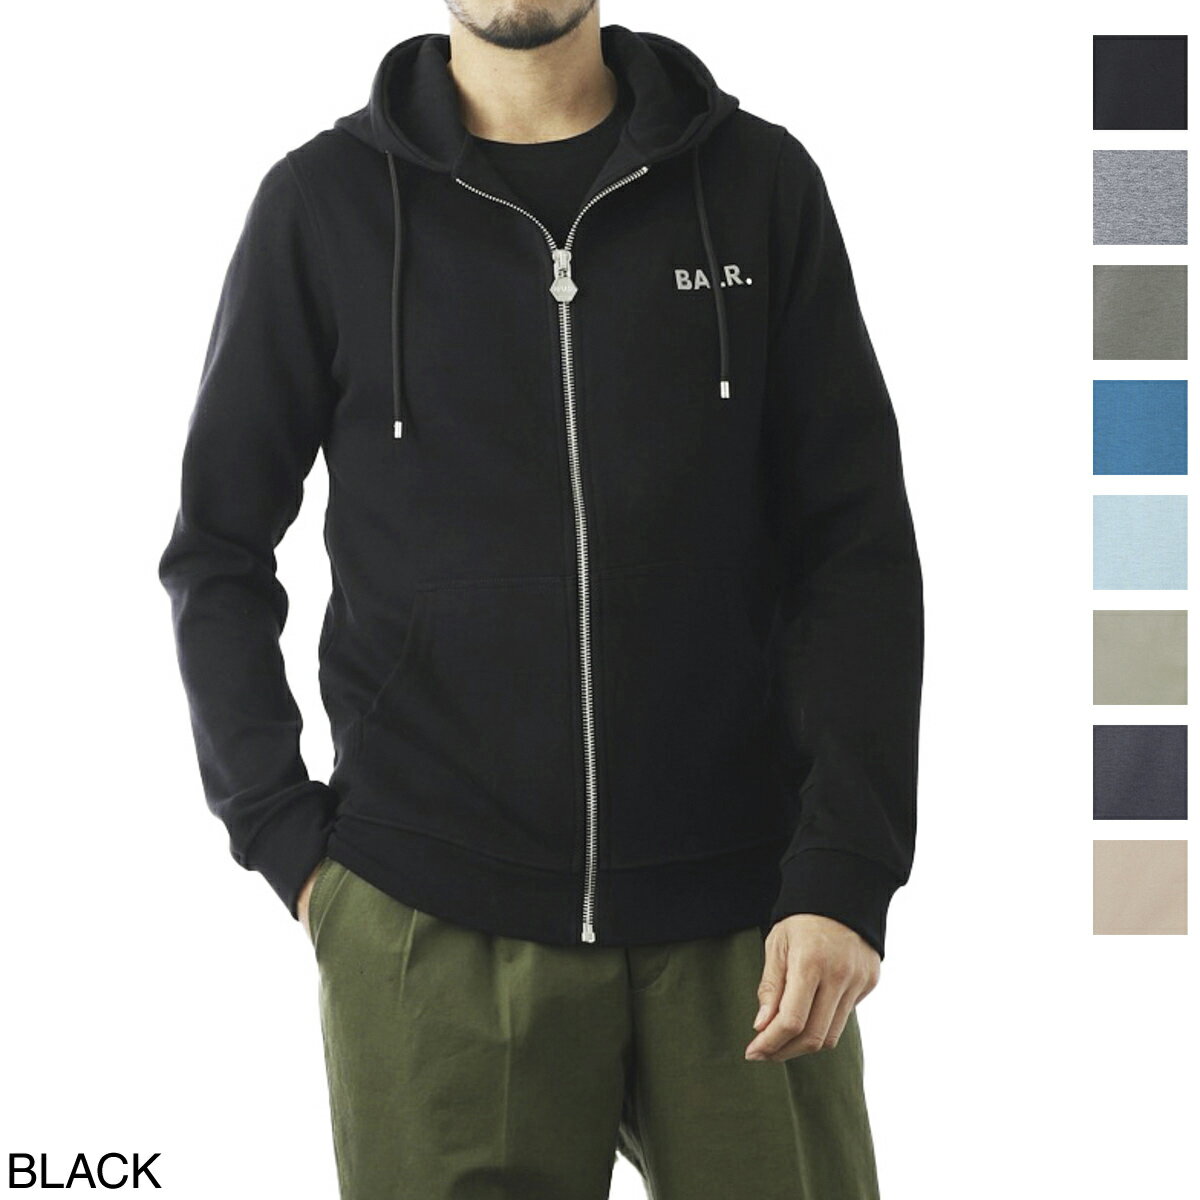 ボーラー BALR. パーカ メンズ q series straight zipthru hoodie black Q-SERIES STRAIGHT ZIP THRU HOODIE【あす楽対応_関東】【返品送料無料】【ラッピング無料】[2023SS]